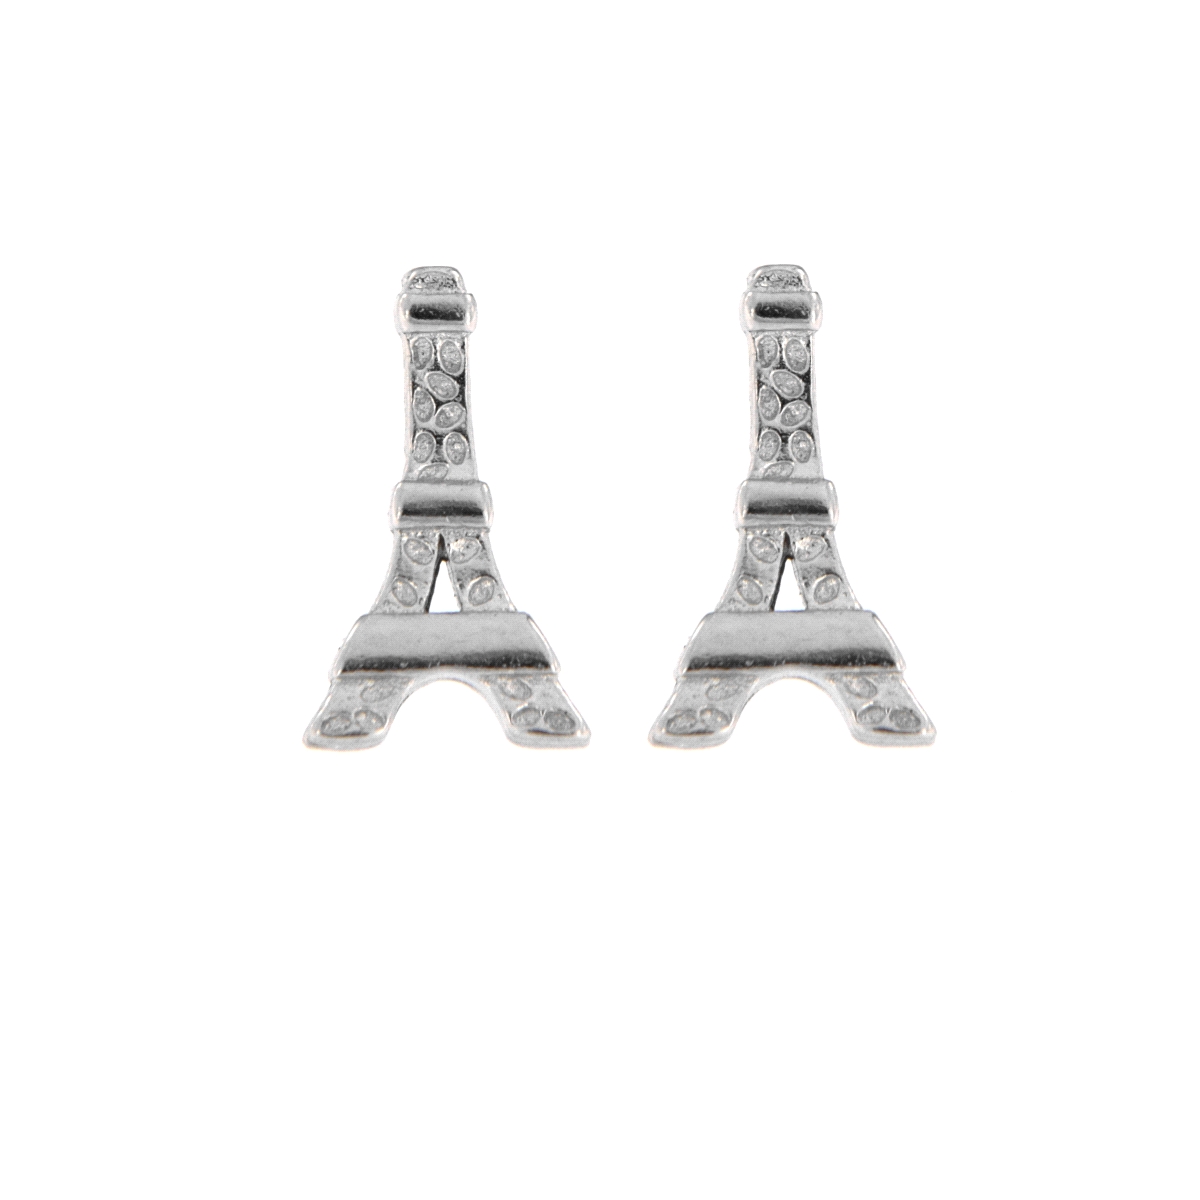 <p>Pendientes originales en forma de Torre Eiffel con circonitas blancas en Plata de Primera Ley.</p>
<ul>
<li><strong>Material: